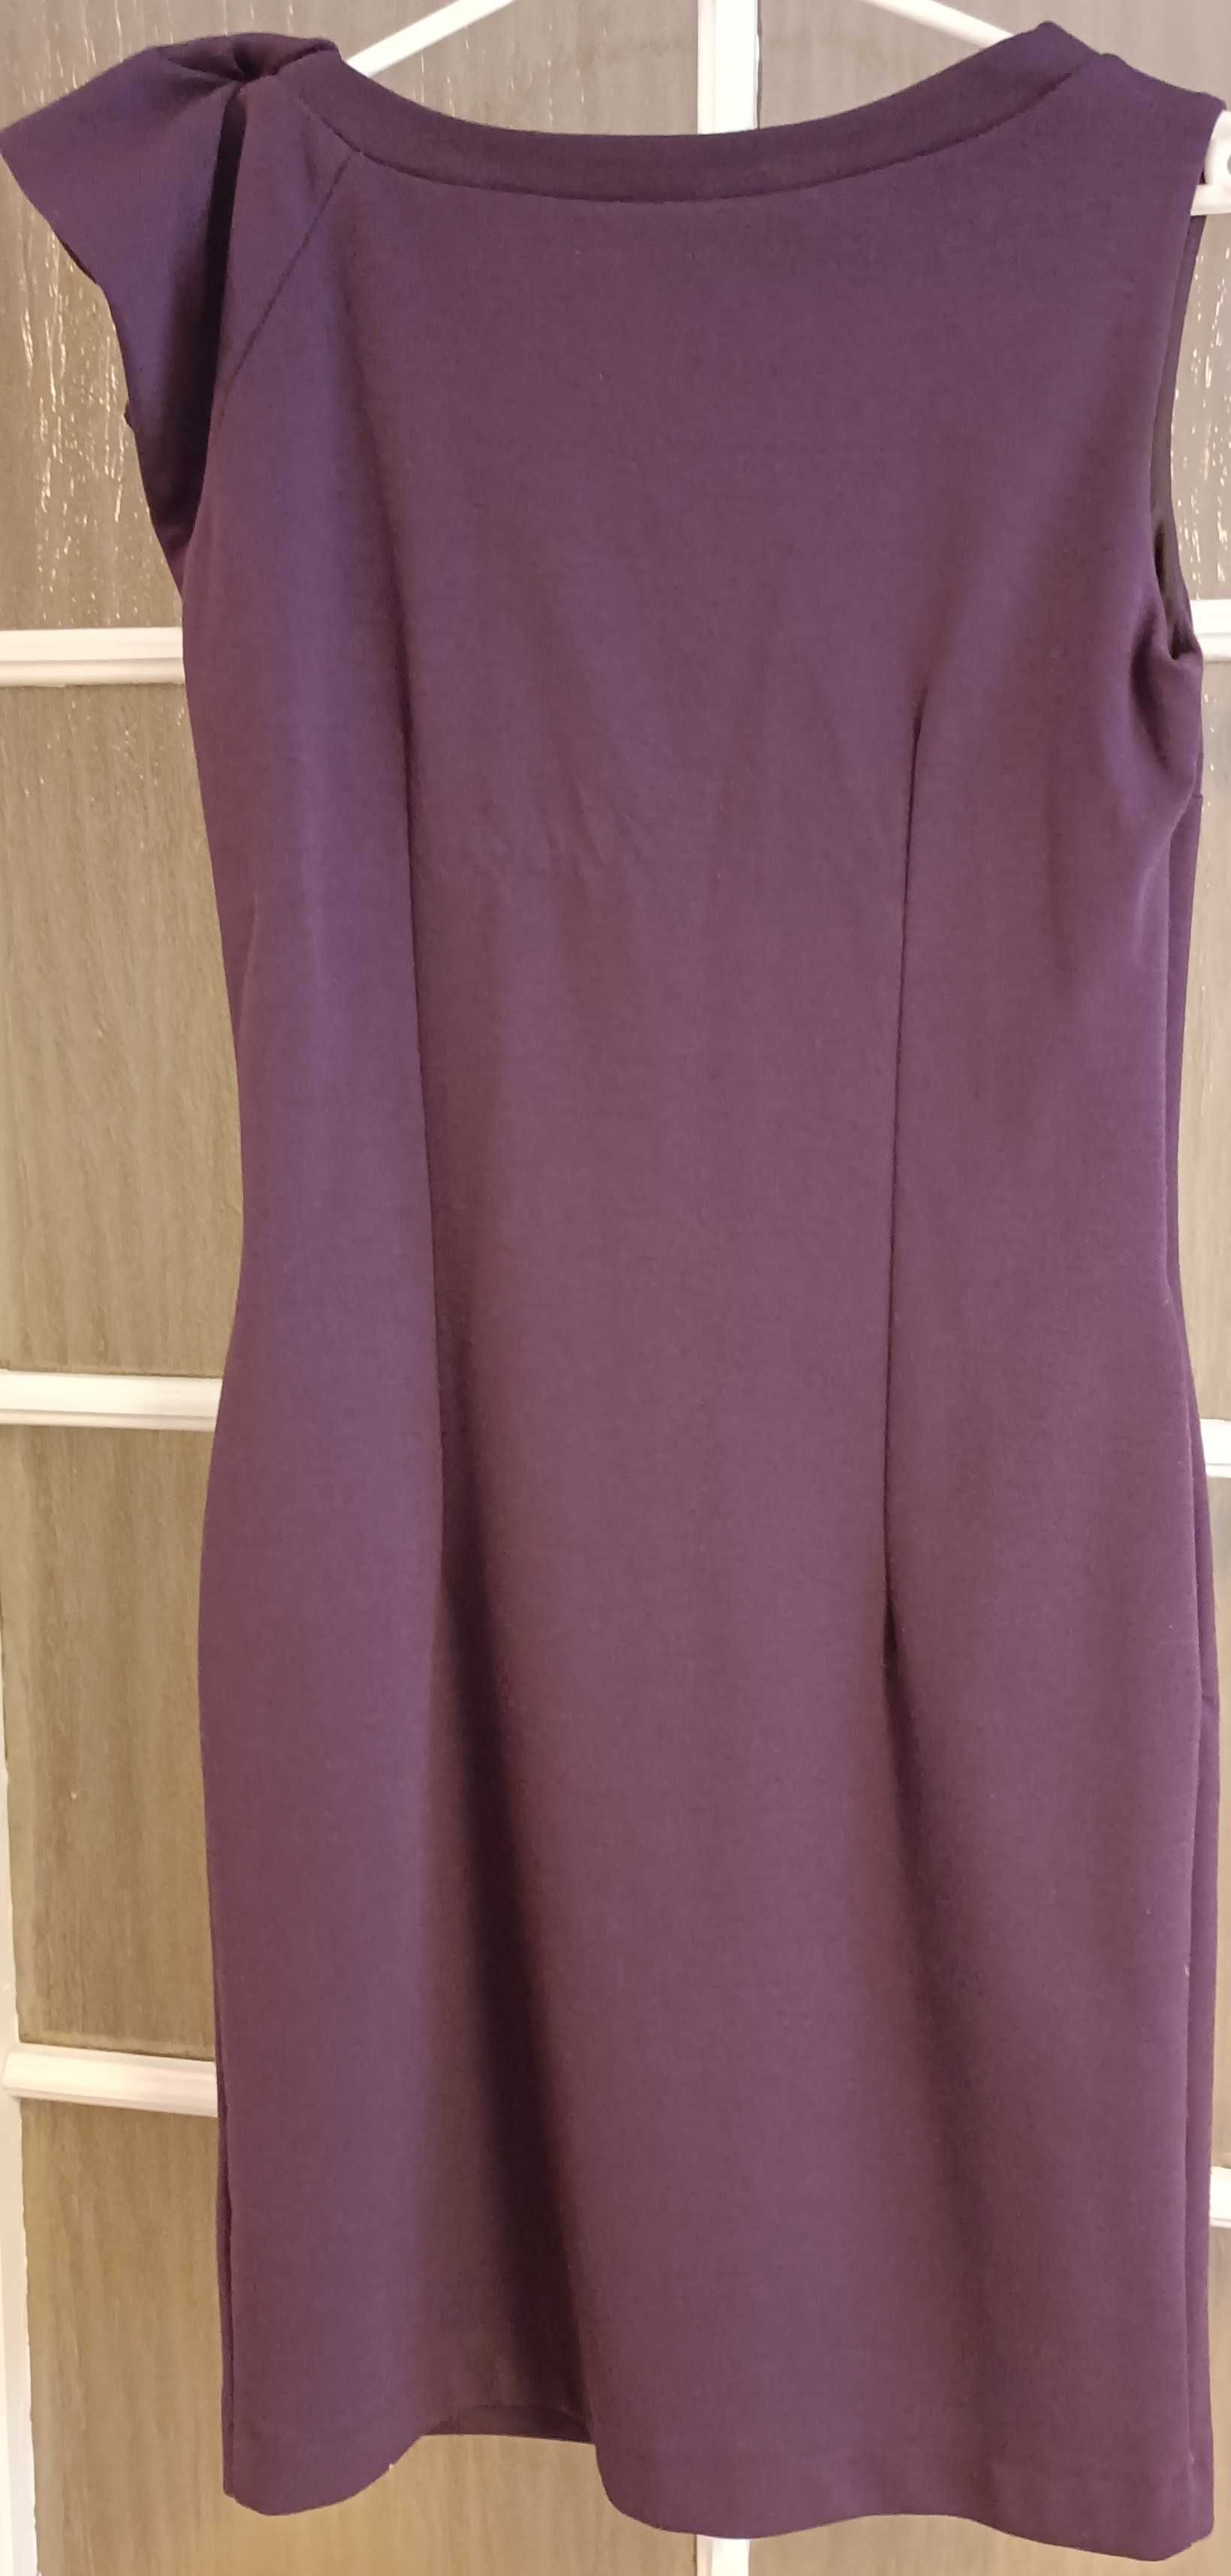 fioletowa sukienka